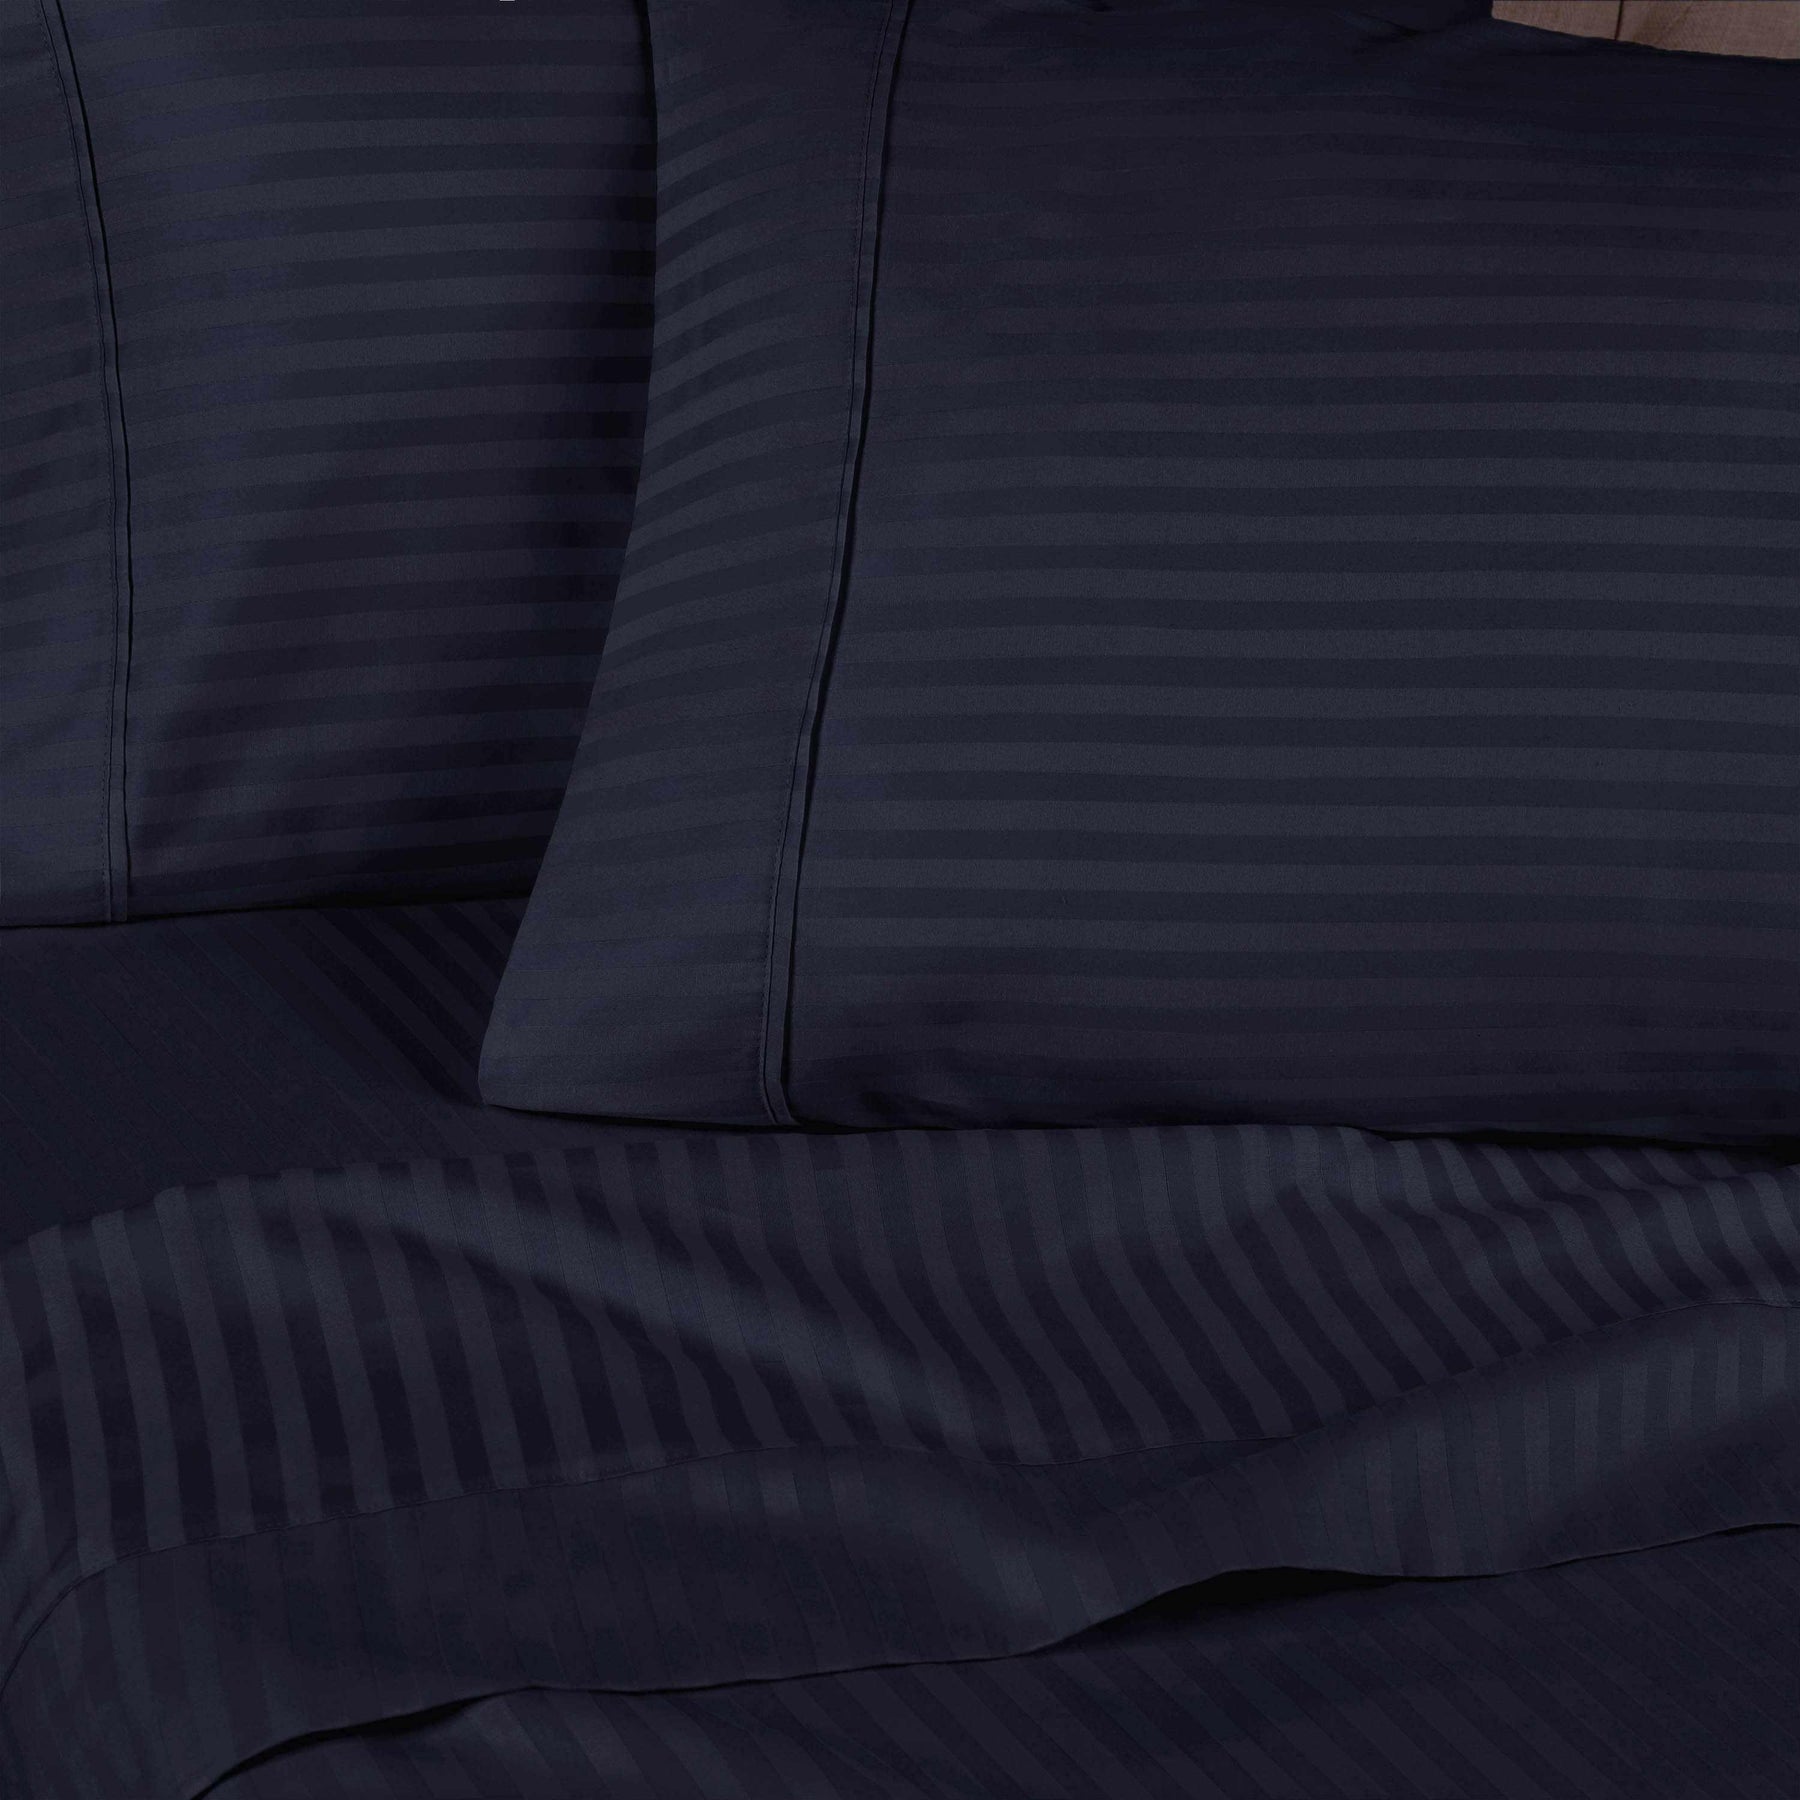 Superior 300 Thread-Count Premium Egyptian Cotton Stripe Sheet Set - Navy Blue